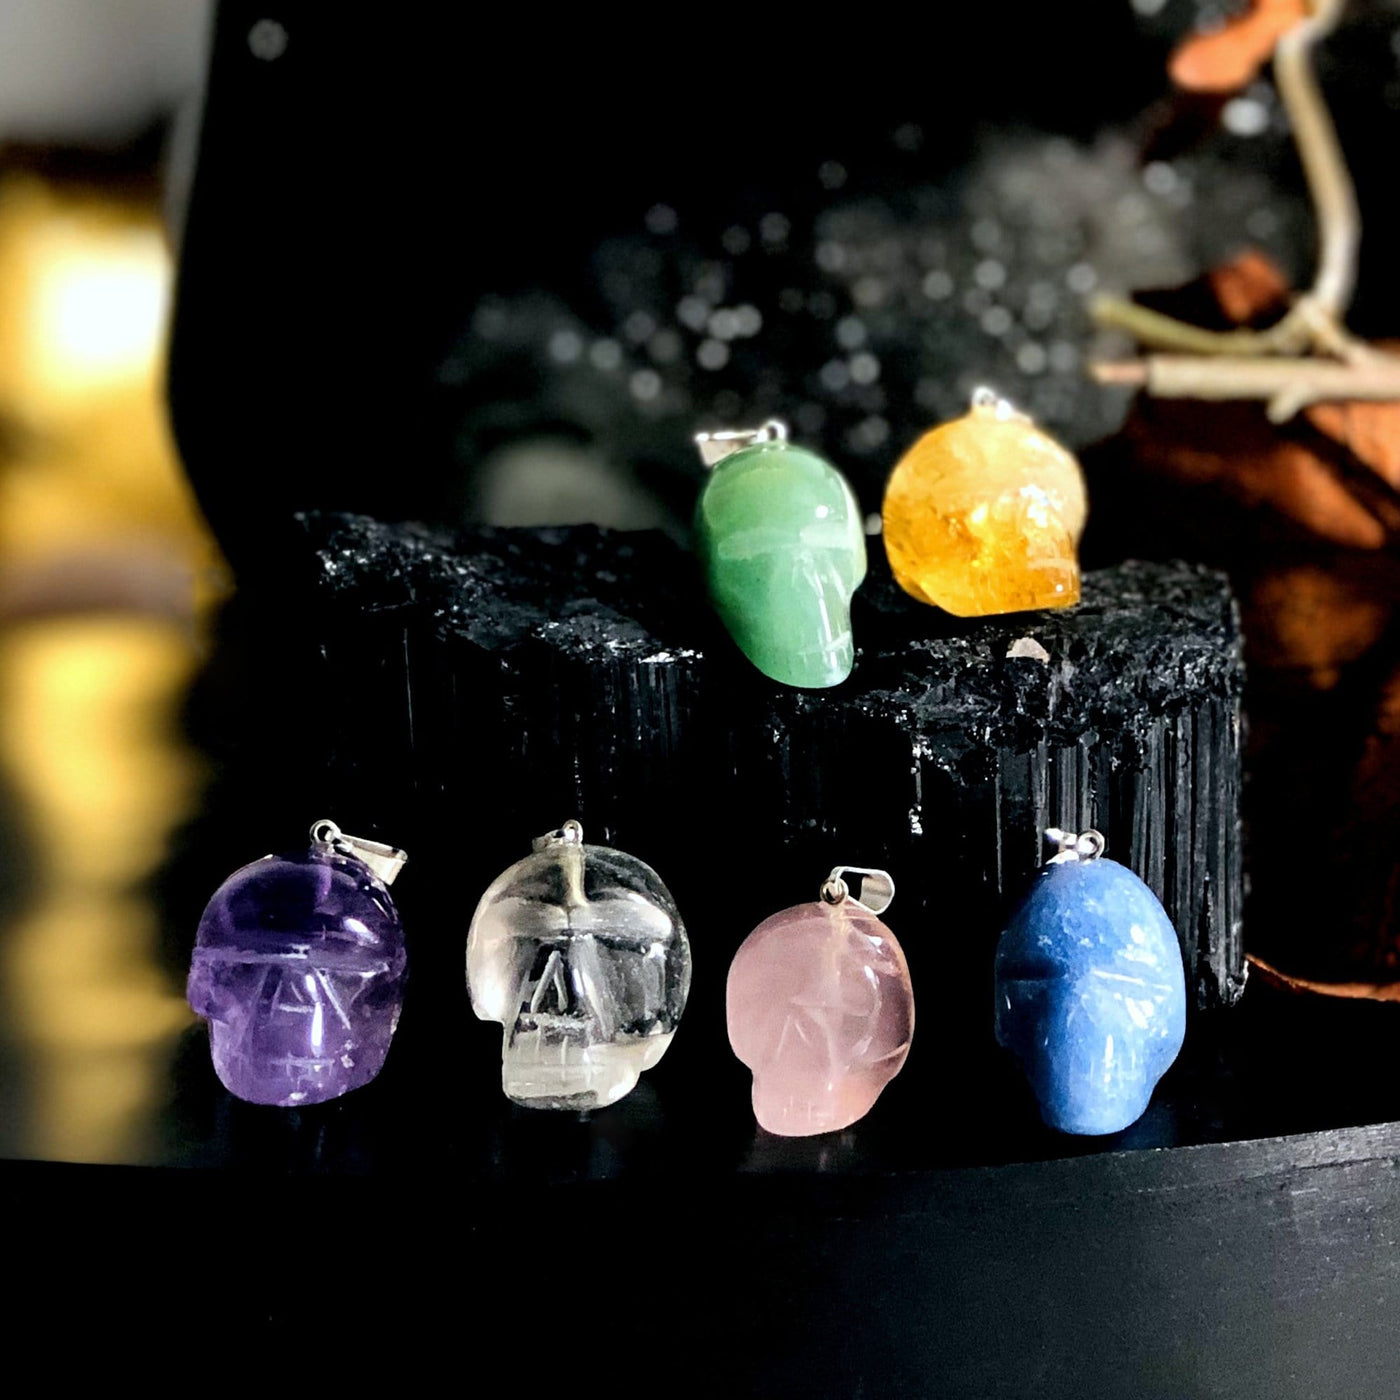 all skull shaped gemstone pendants on display